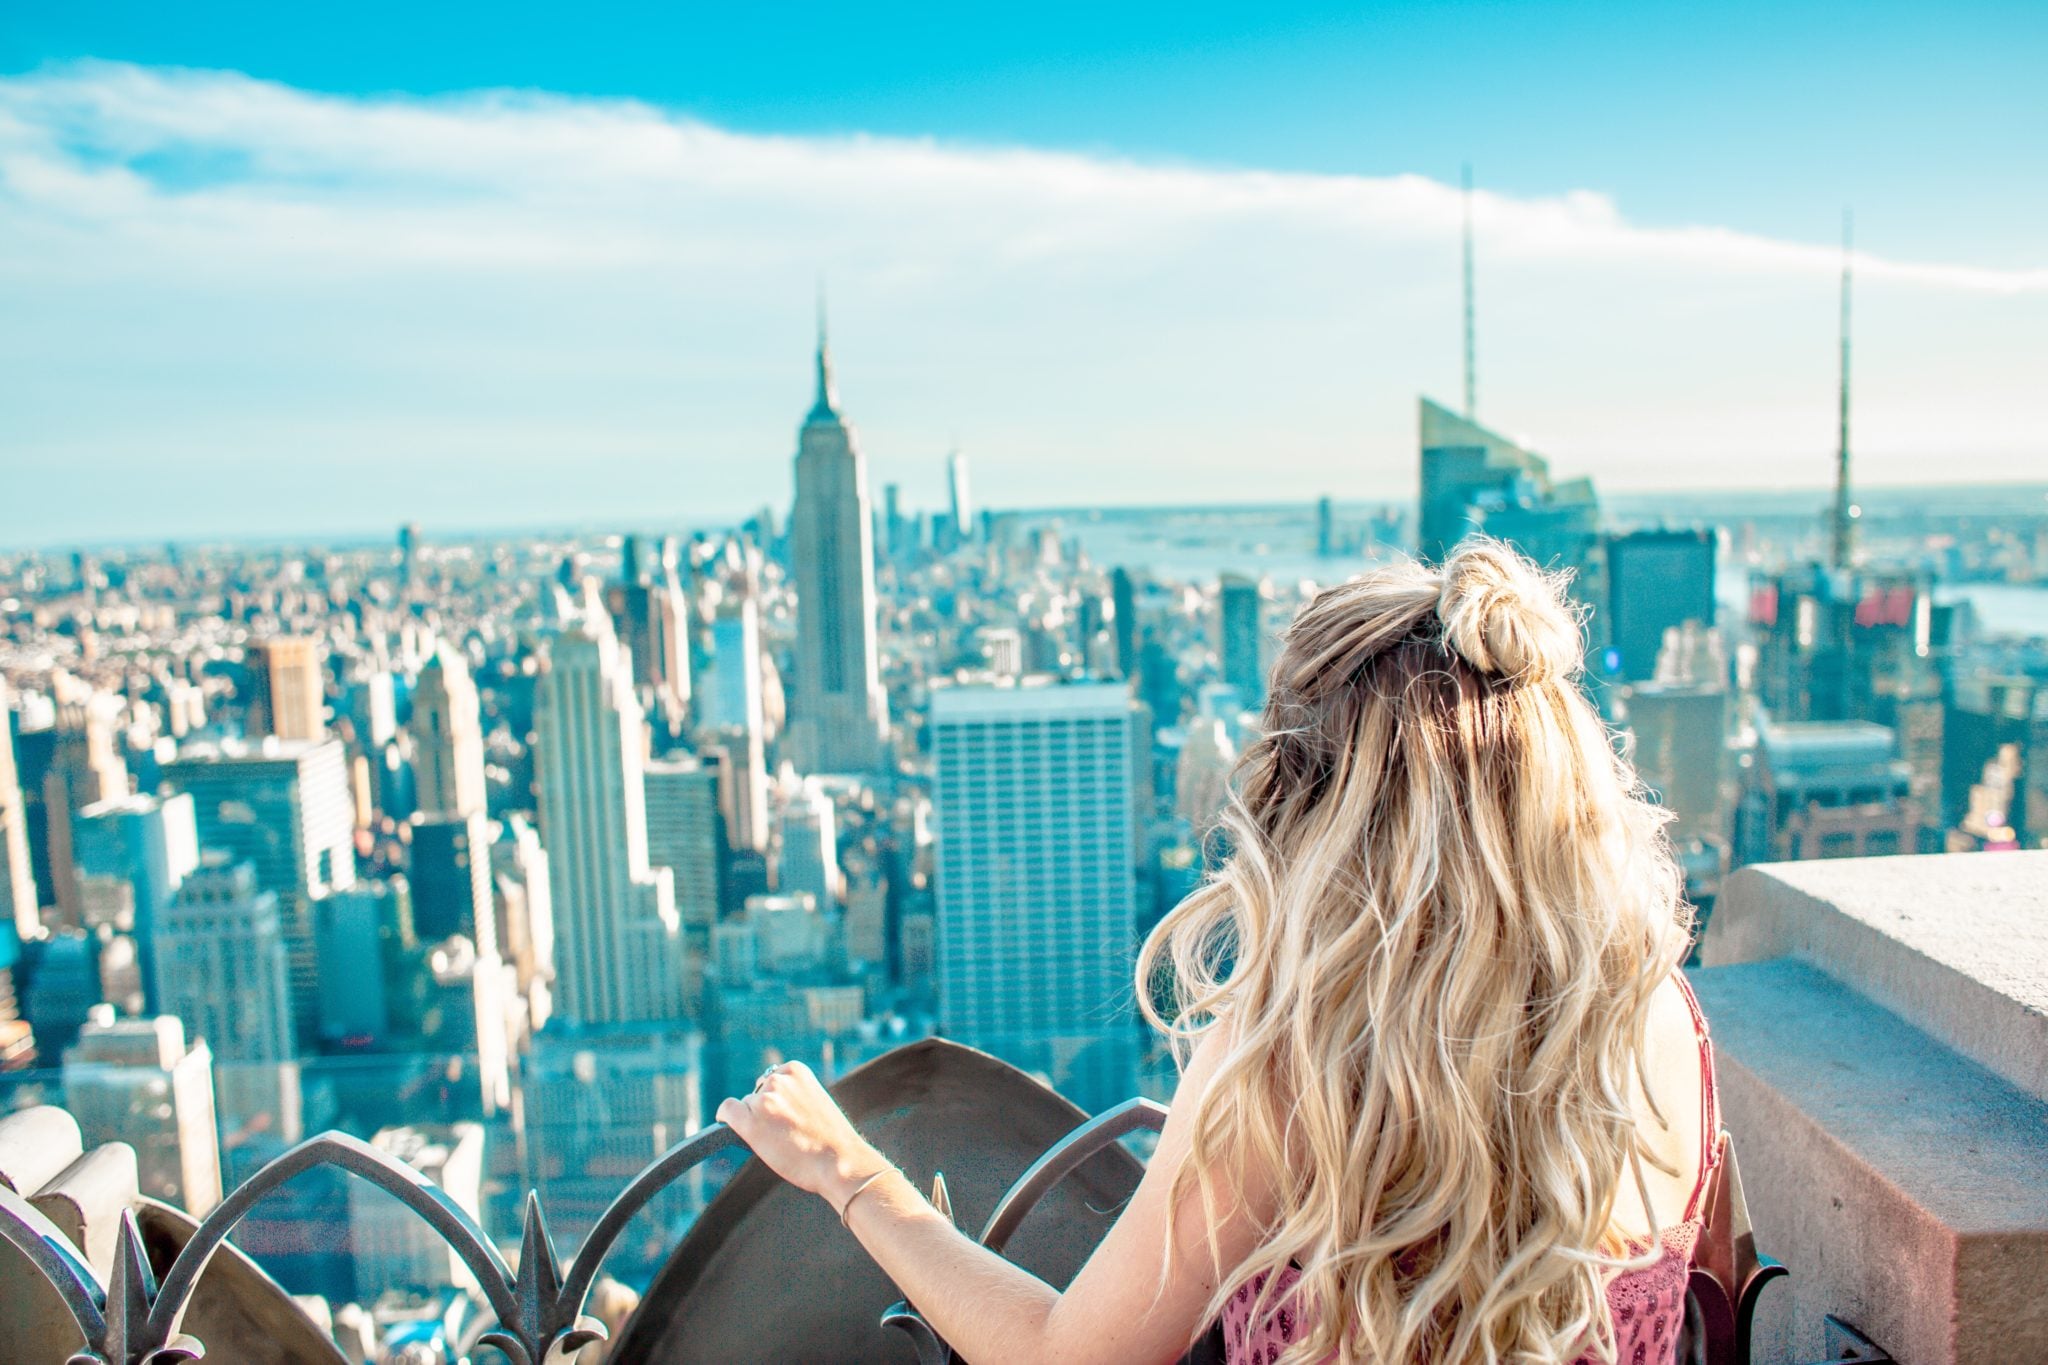 Dziewczyna stojąca na tarasie widokowym obserwująca panoramę Nowego Jorku. Bardzo dużo budynków, wieżowców, niebieskie niebo, słoneczny dzień.